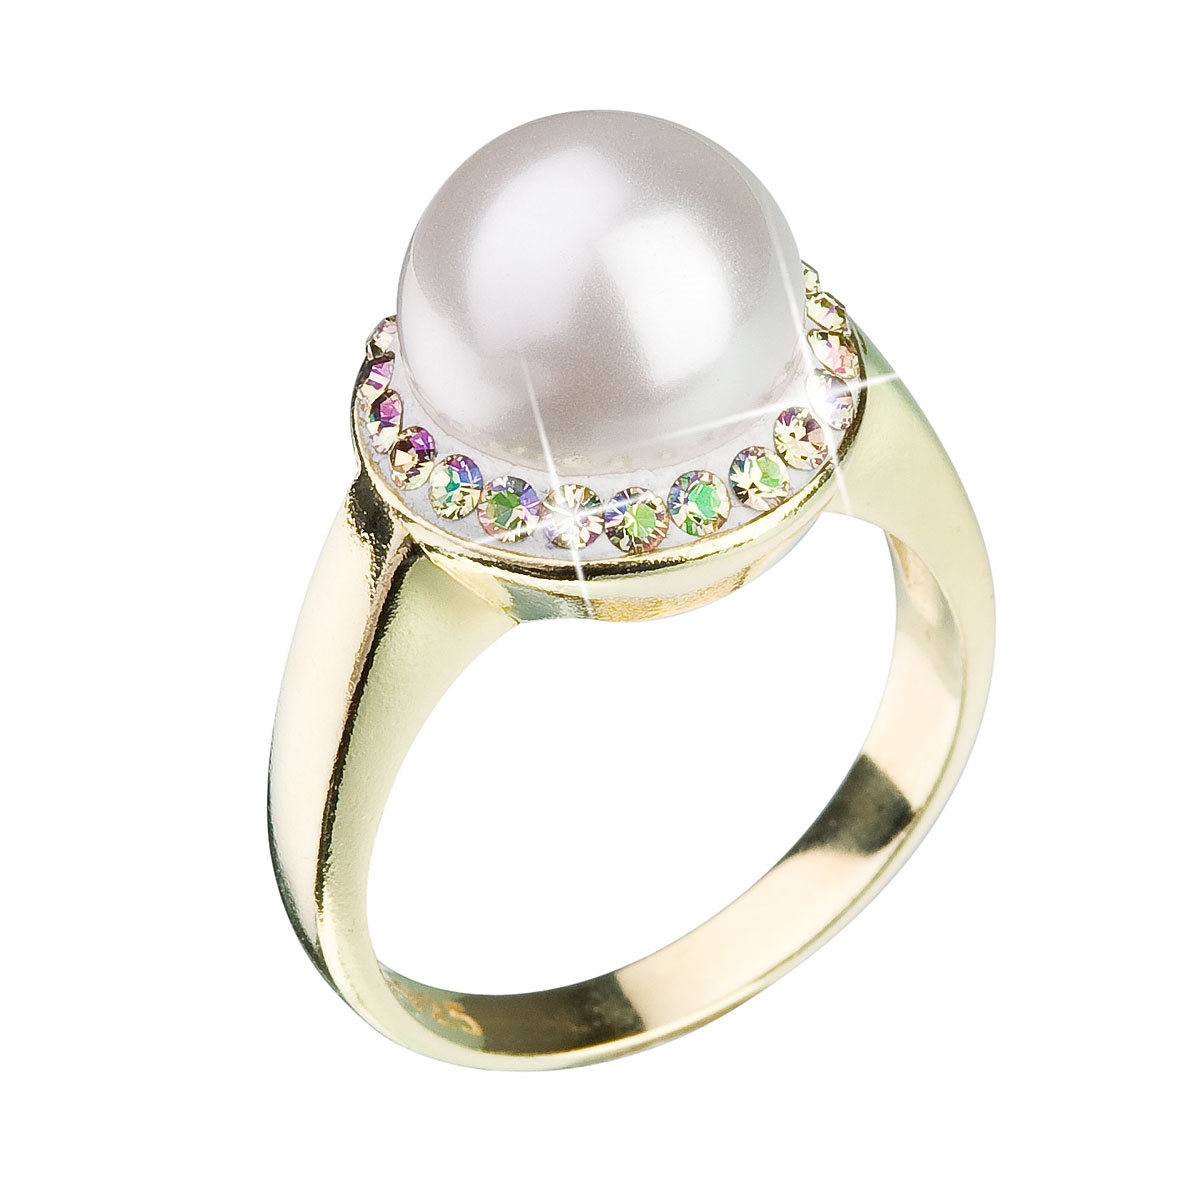 Strieborný prsteň s kryštálmi Swarovski a perlou biely luminous green